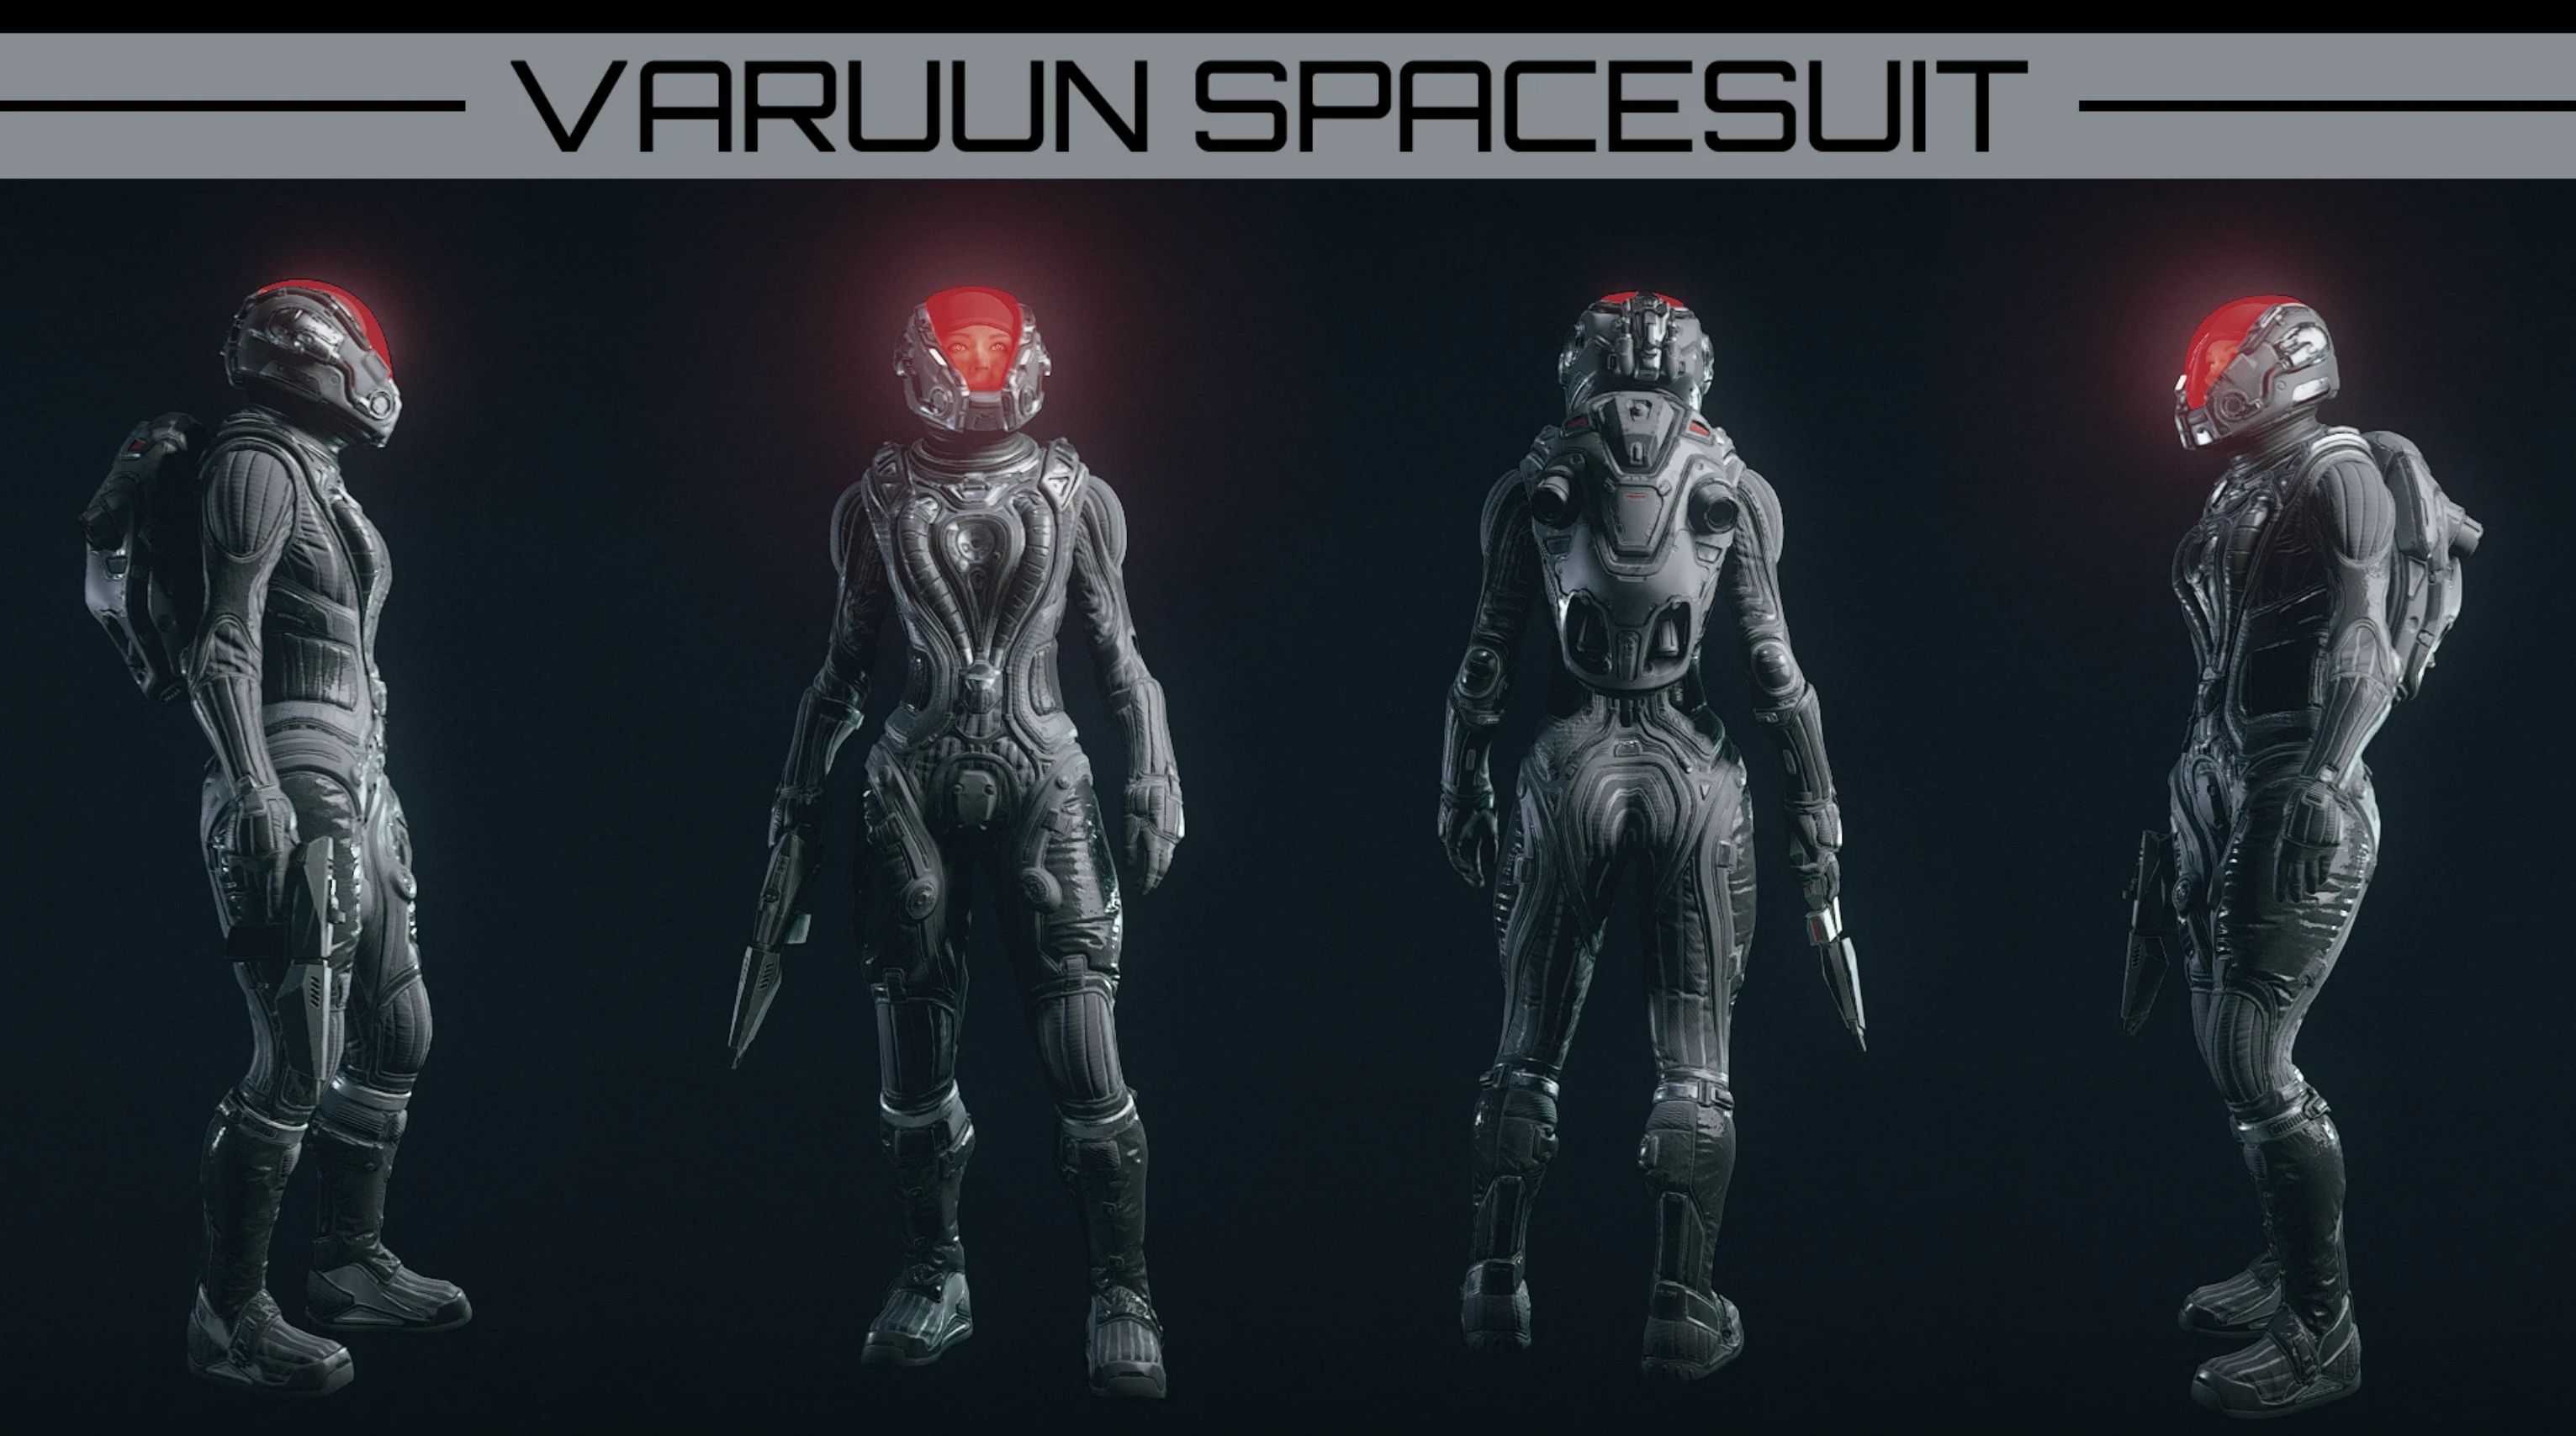 Varuun Spacesuit Remade